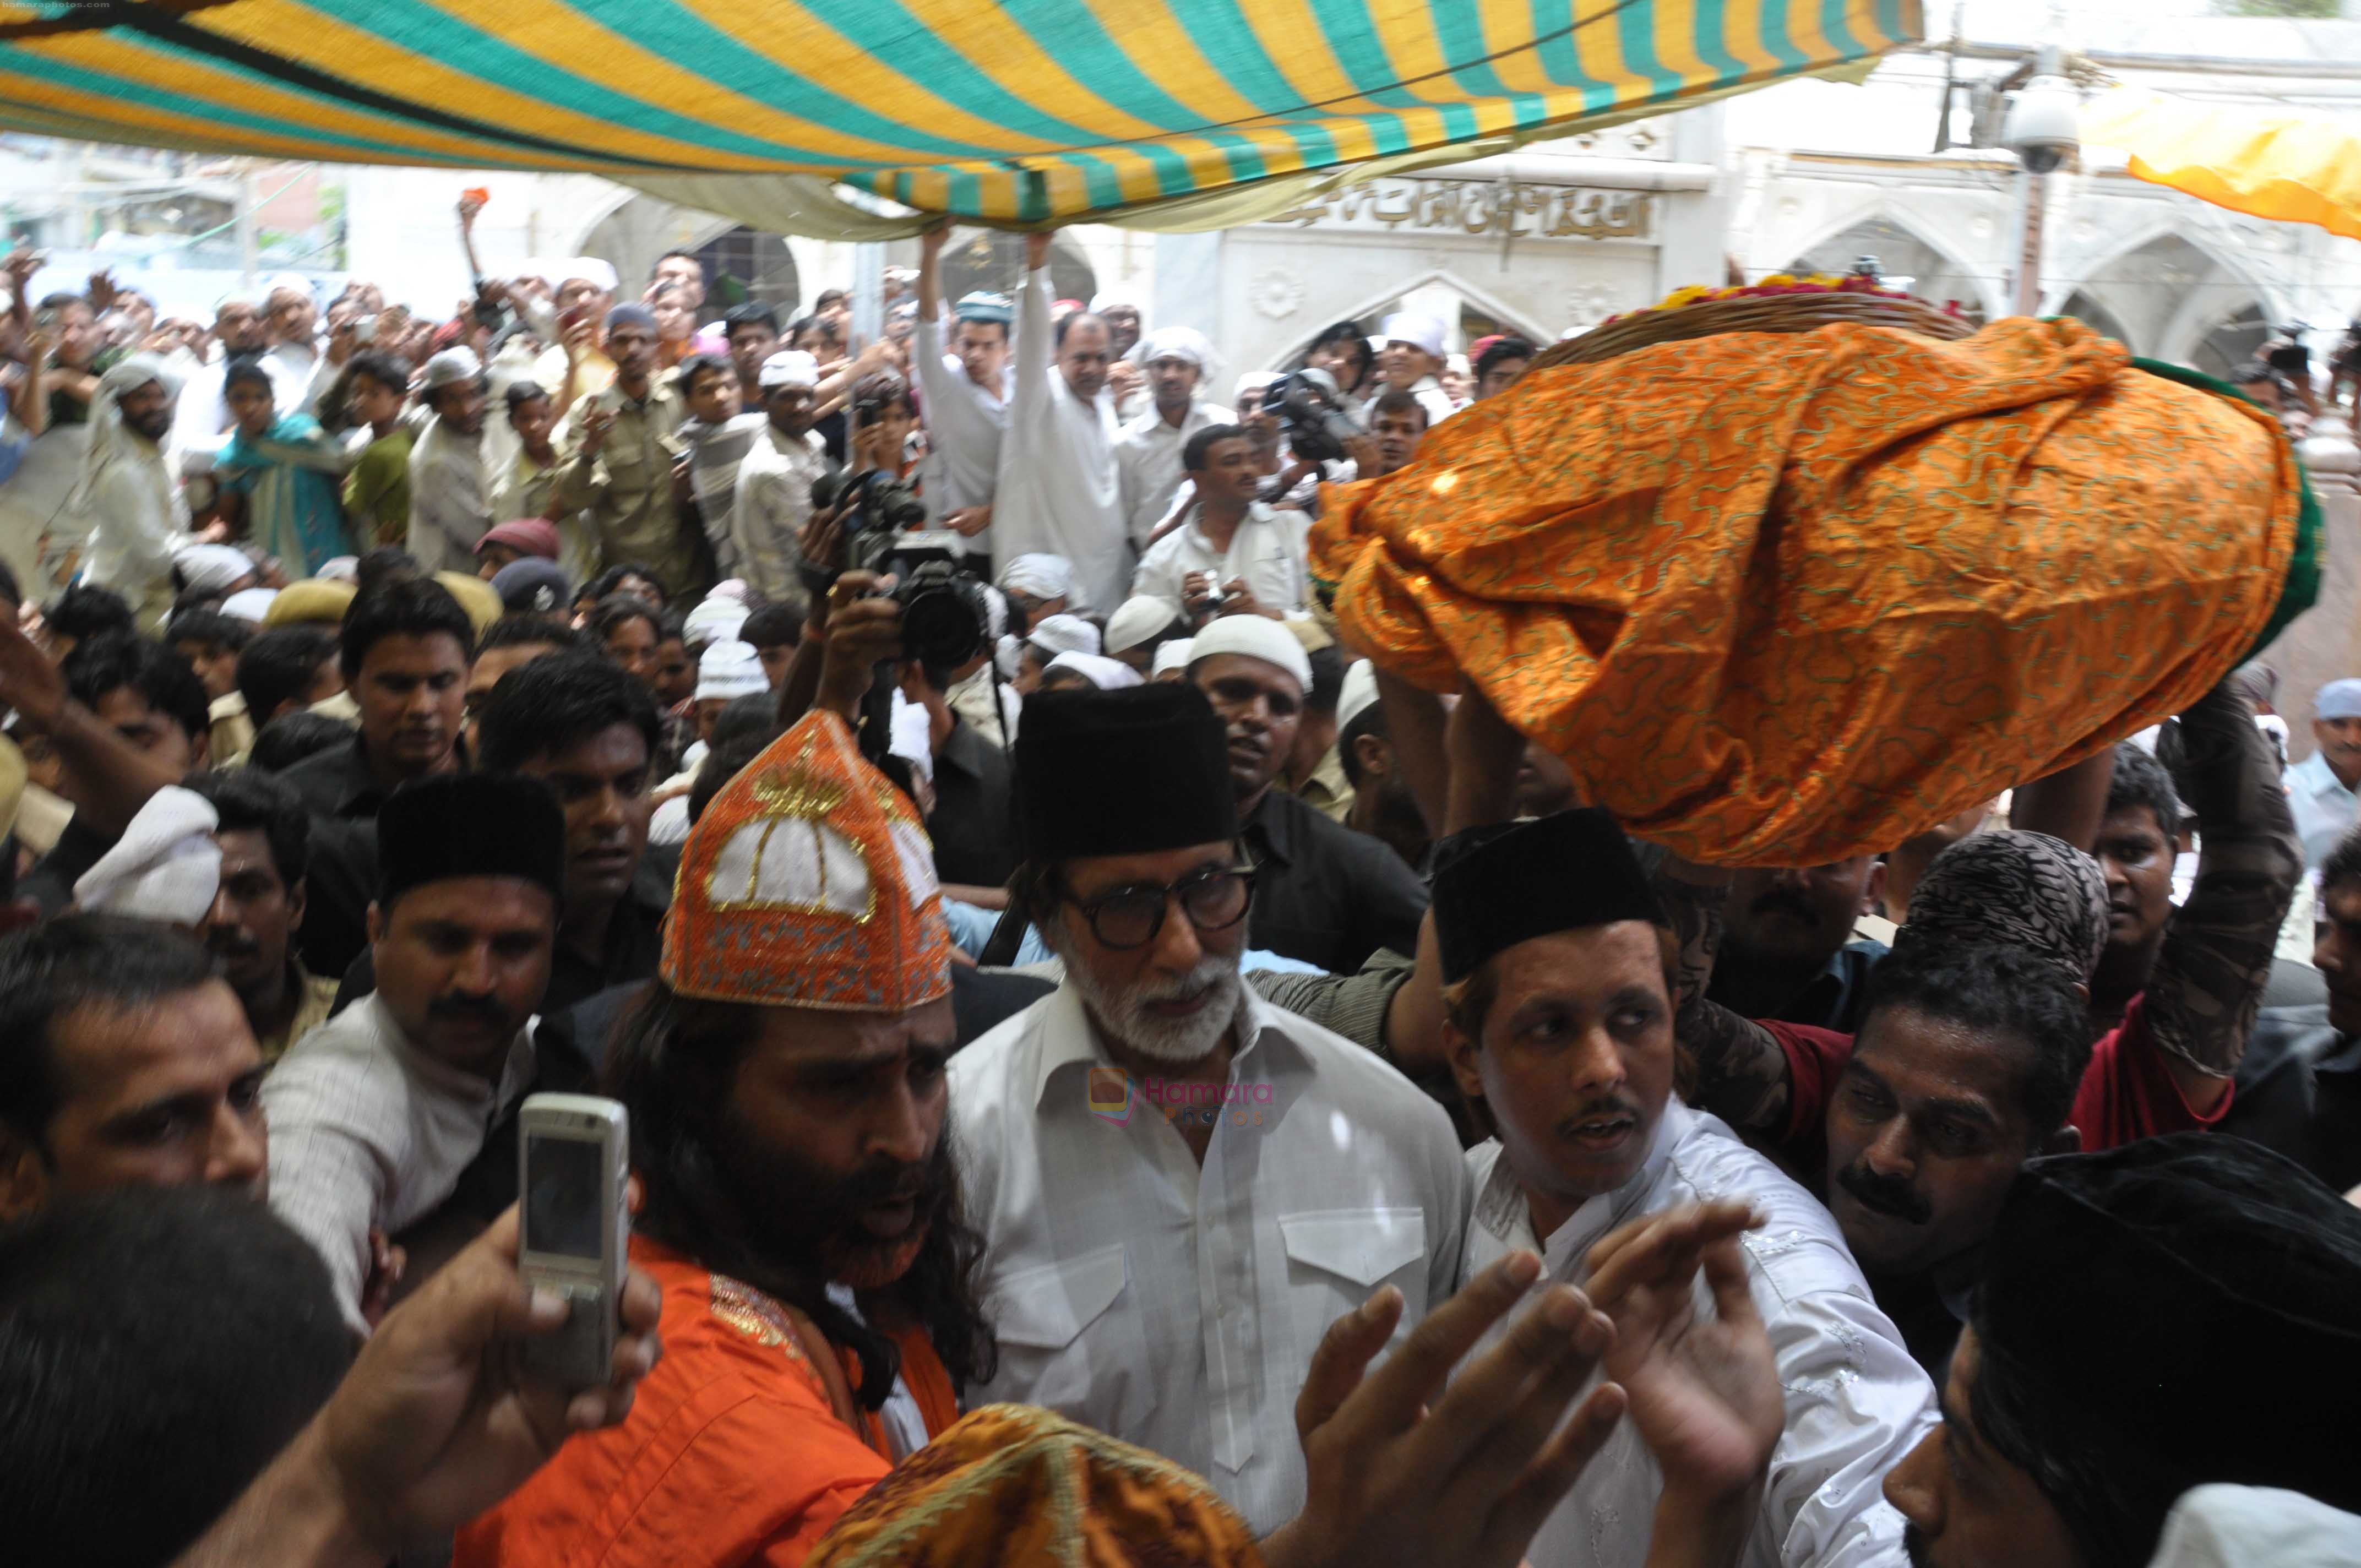 Amitabh Bachchan at the Ajmer Sharif on 5th July 2011